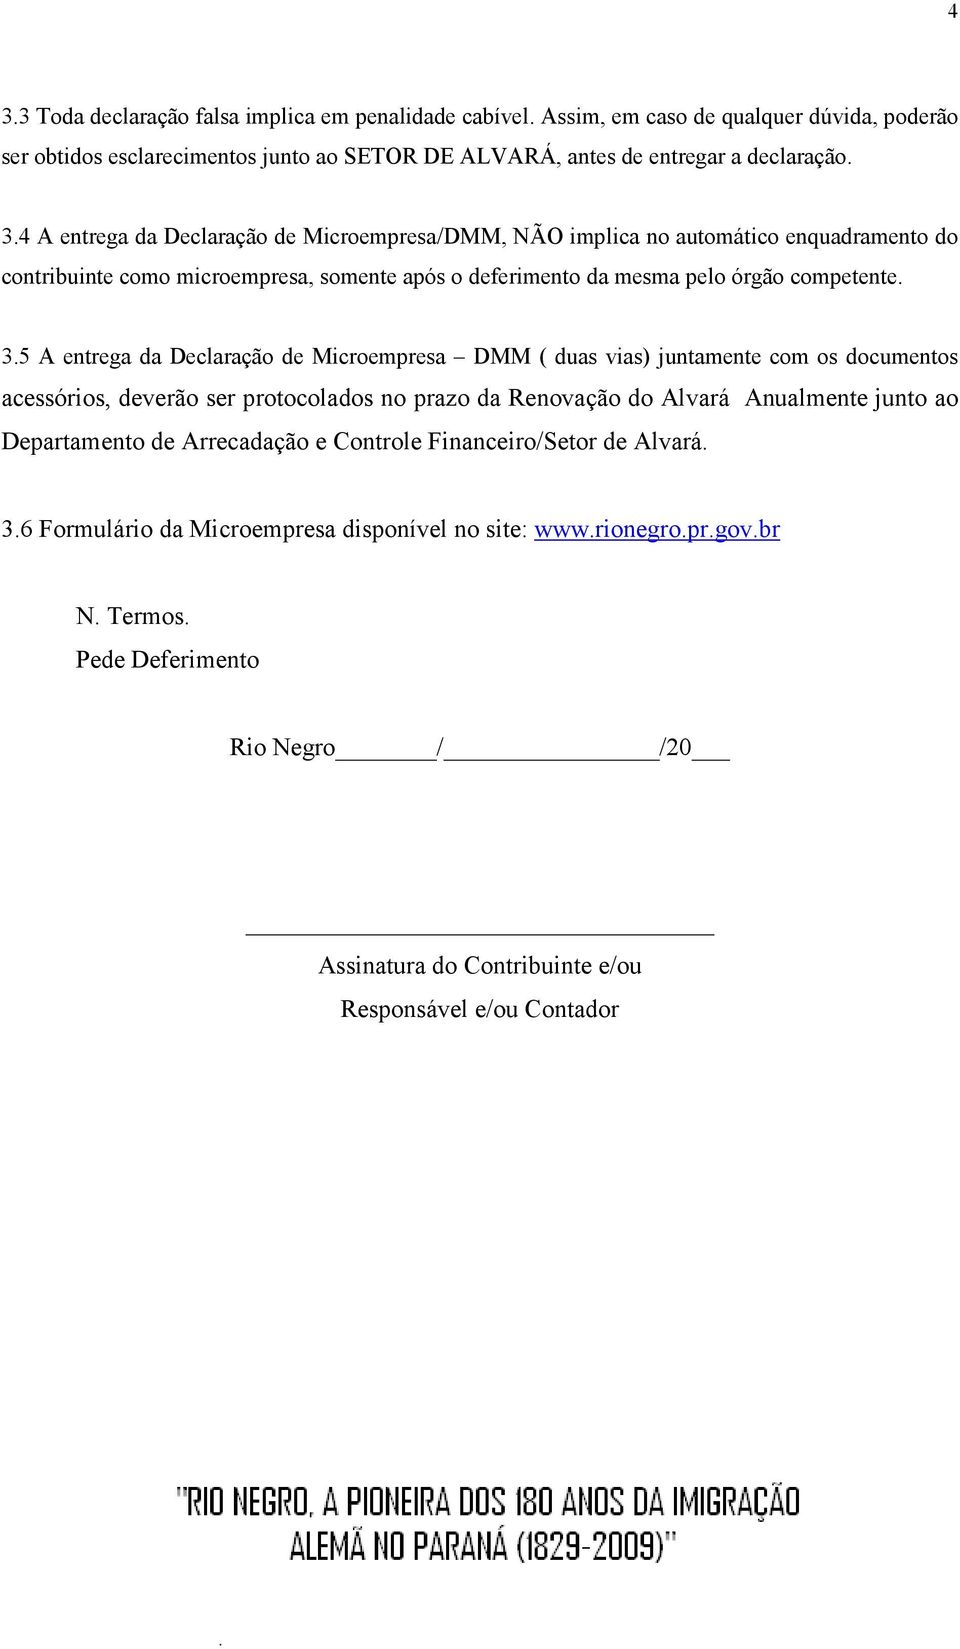 Arrecadação e Controle Financeiro/Setor de Alvará. 3.6 Formulário da Microempresa disponível no site: www.rionegro.pr.gov.br N. Termos.